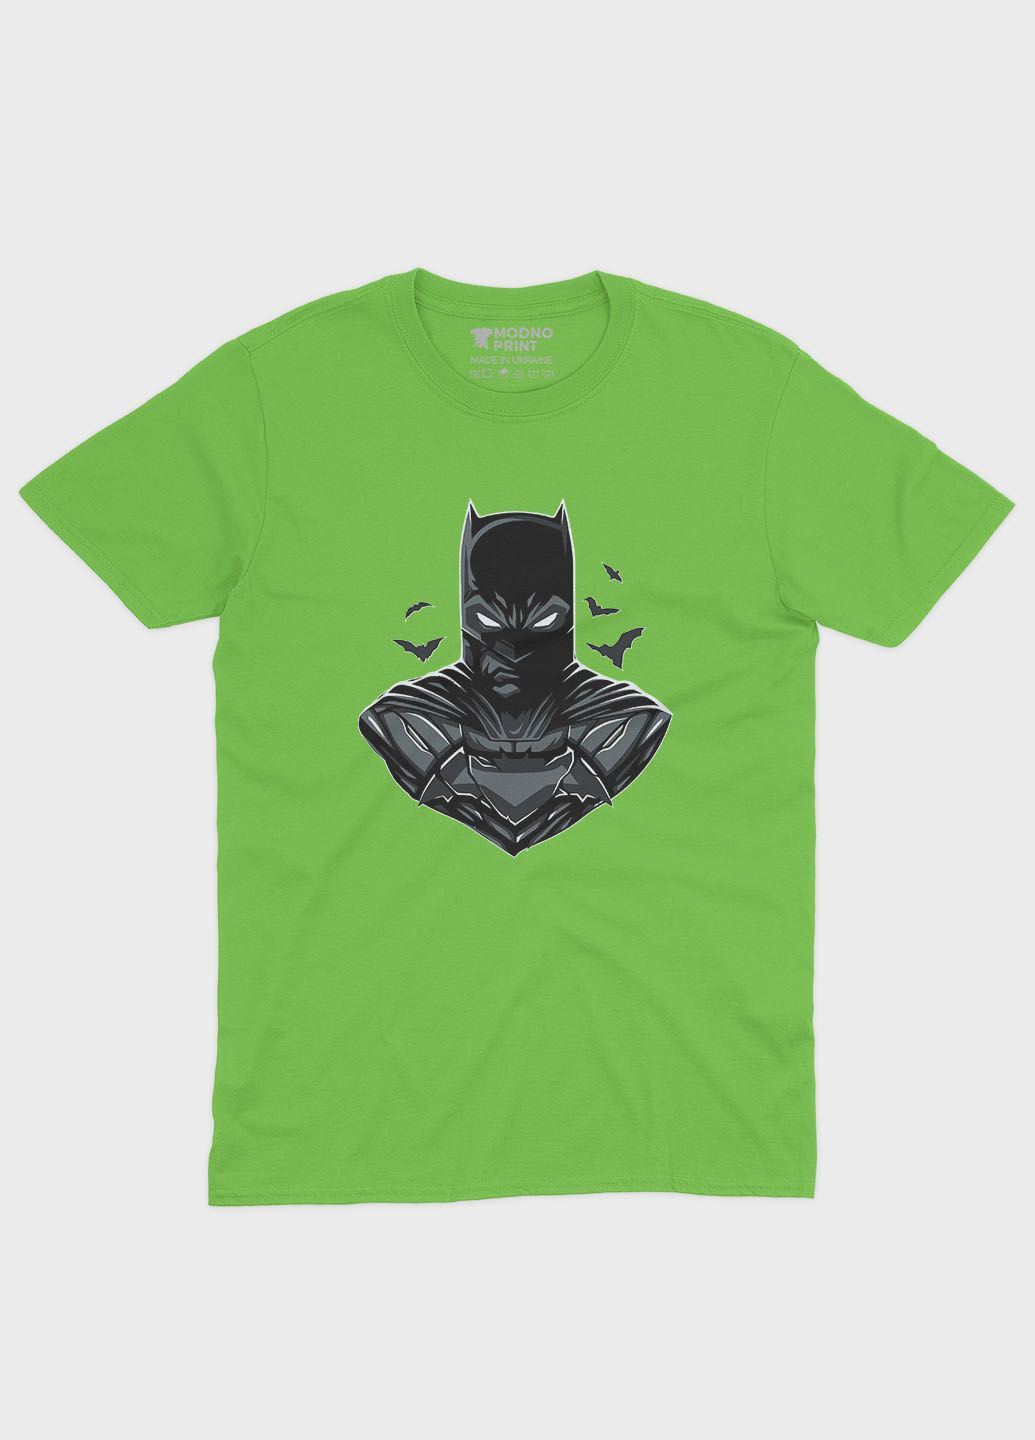 Салатова демісезонна футболка для хлопчика з принтом супергероя - бетмен (ts001-1-kiw-006-003-026-b) Modno